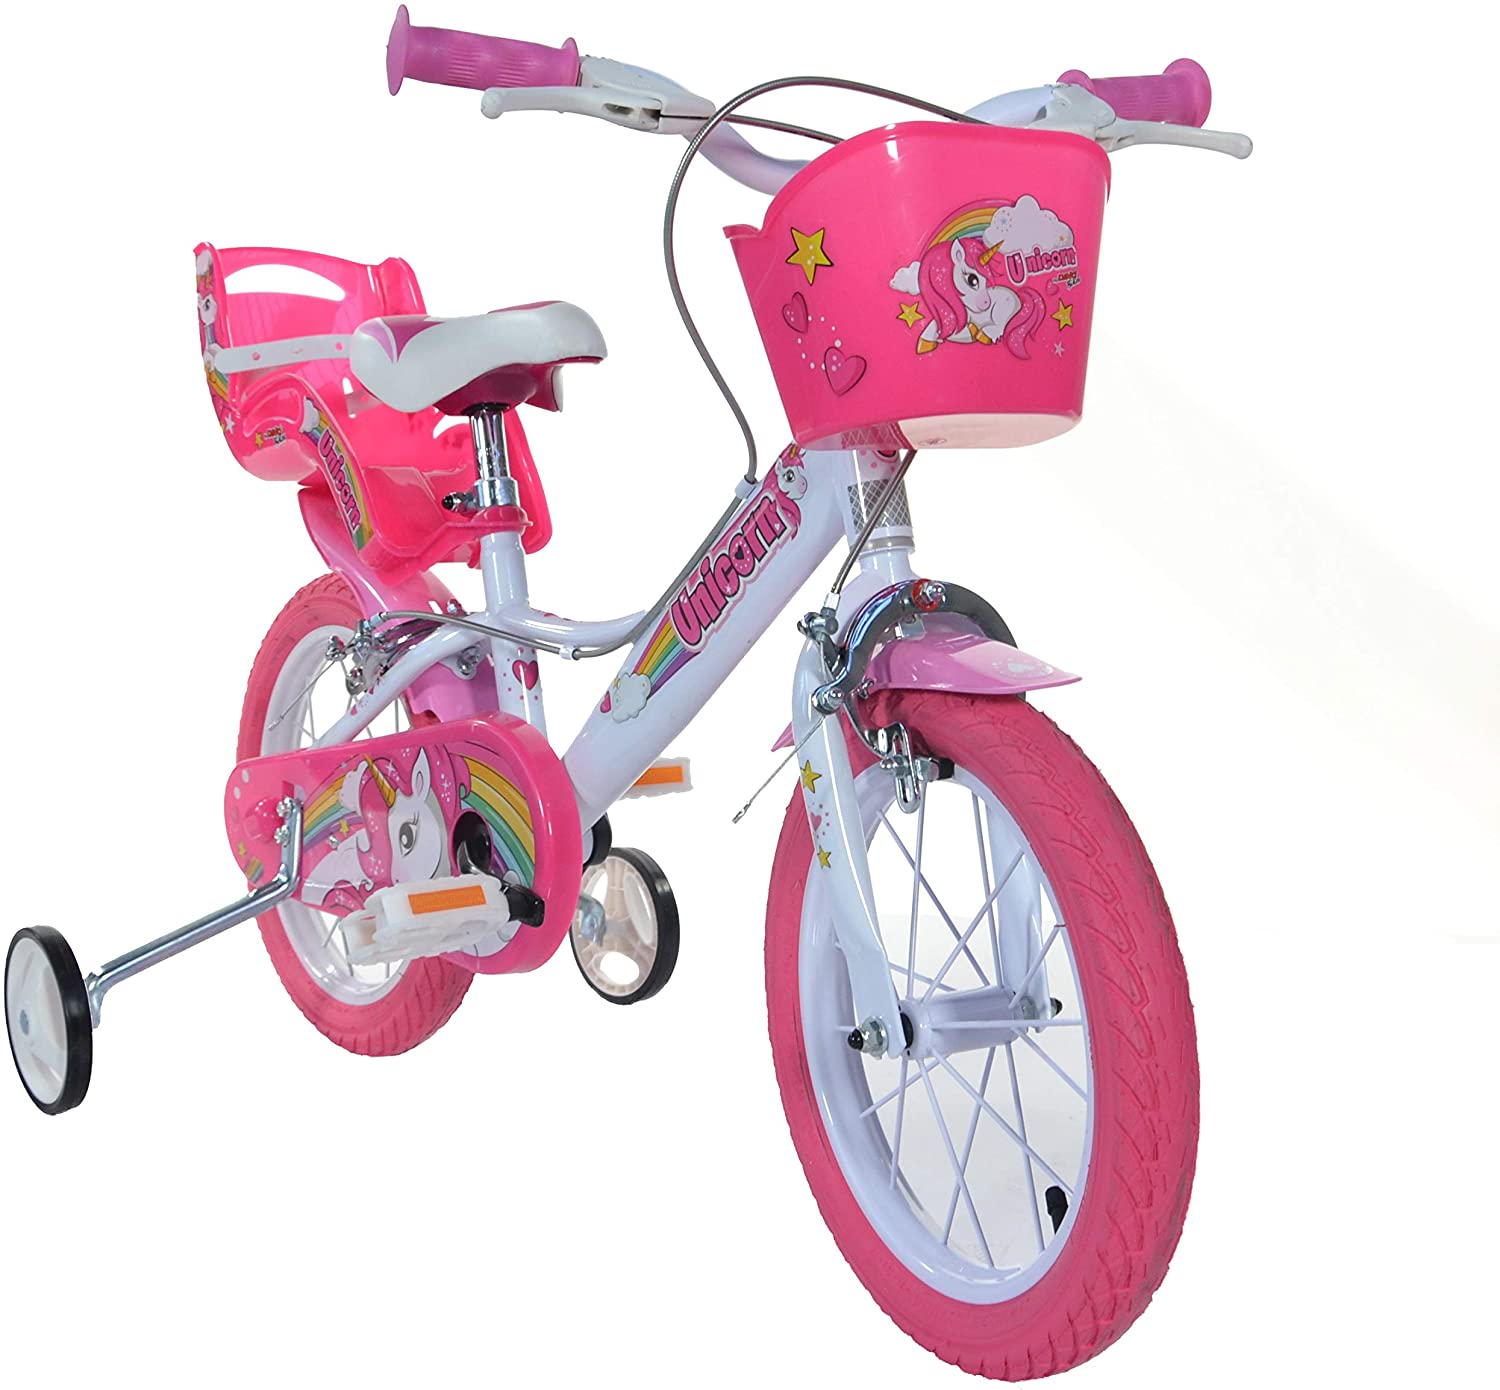 Bici bambina unicorn 14" - colori arcobaleno, telaio in acciaio, freni anteriori e posteriori, cestino, portabambola per bambine dai 5 ai 7 anni - 